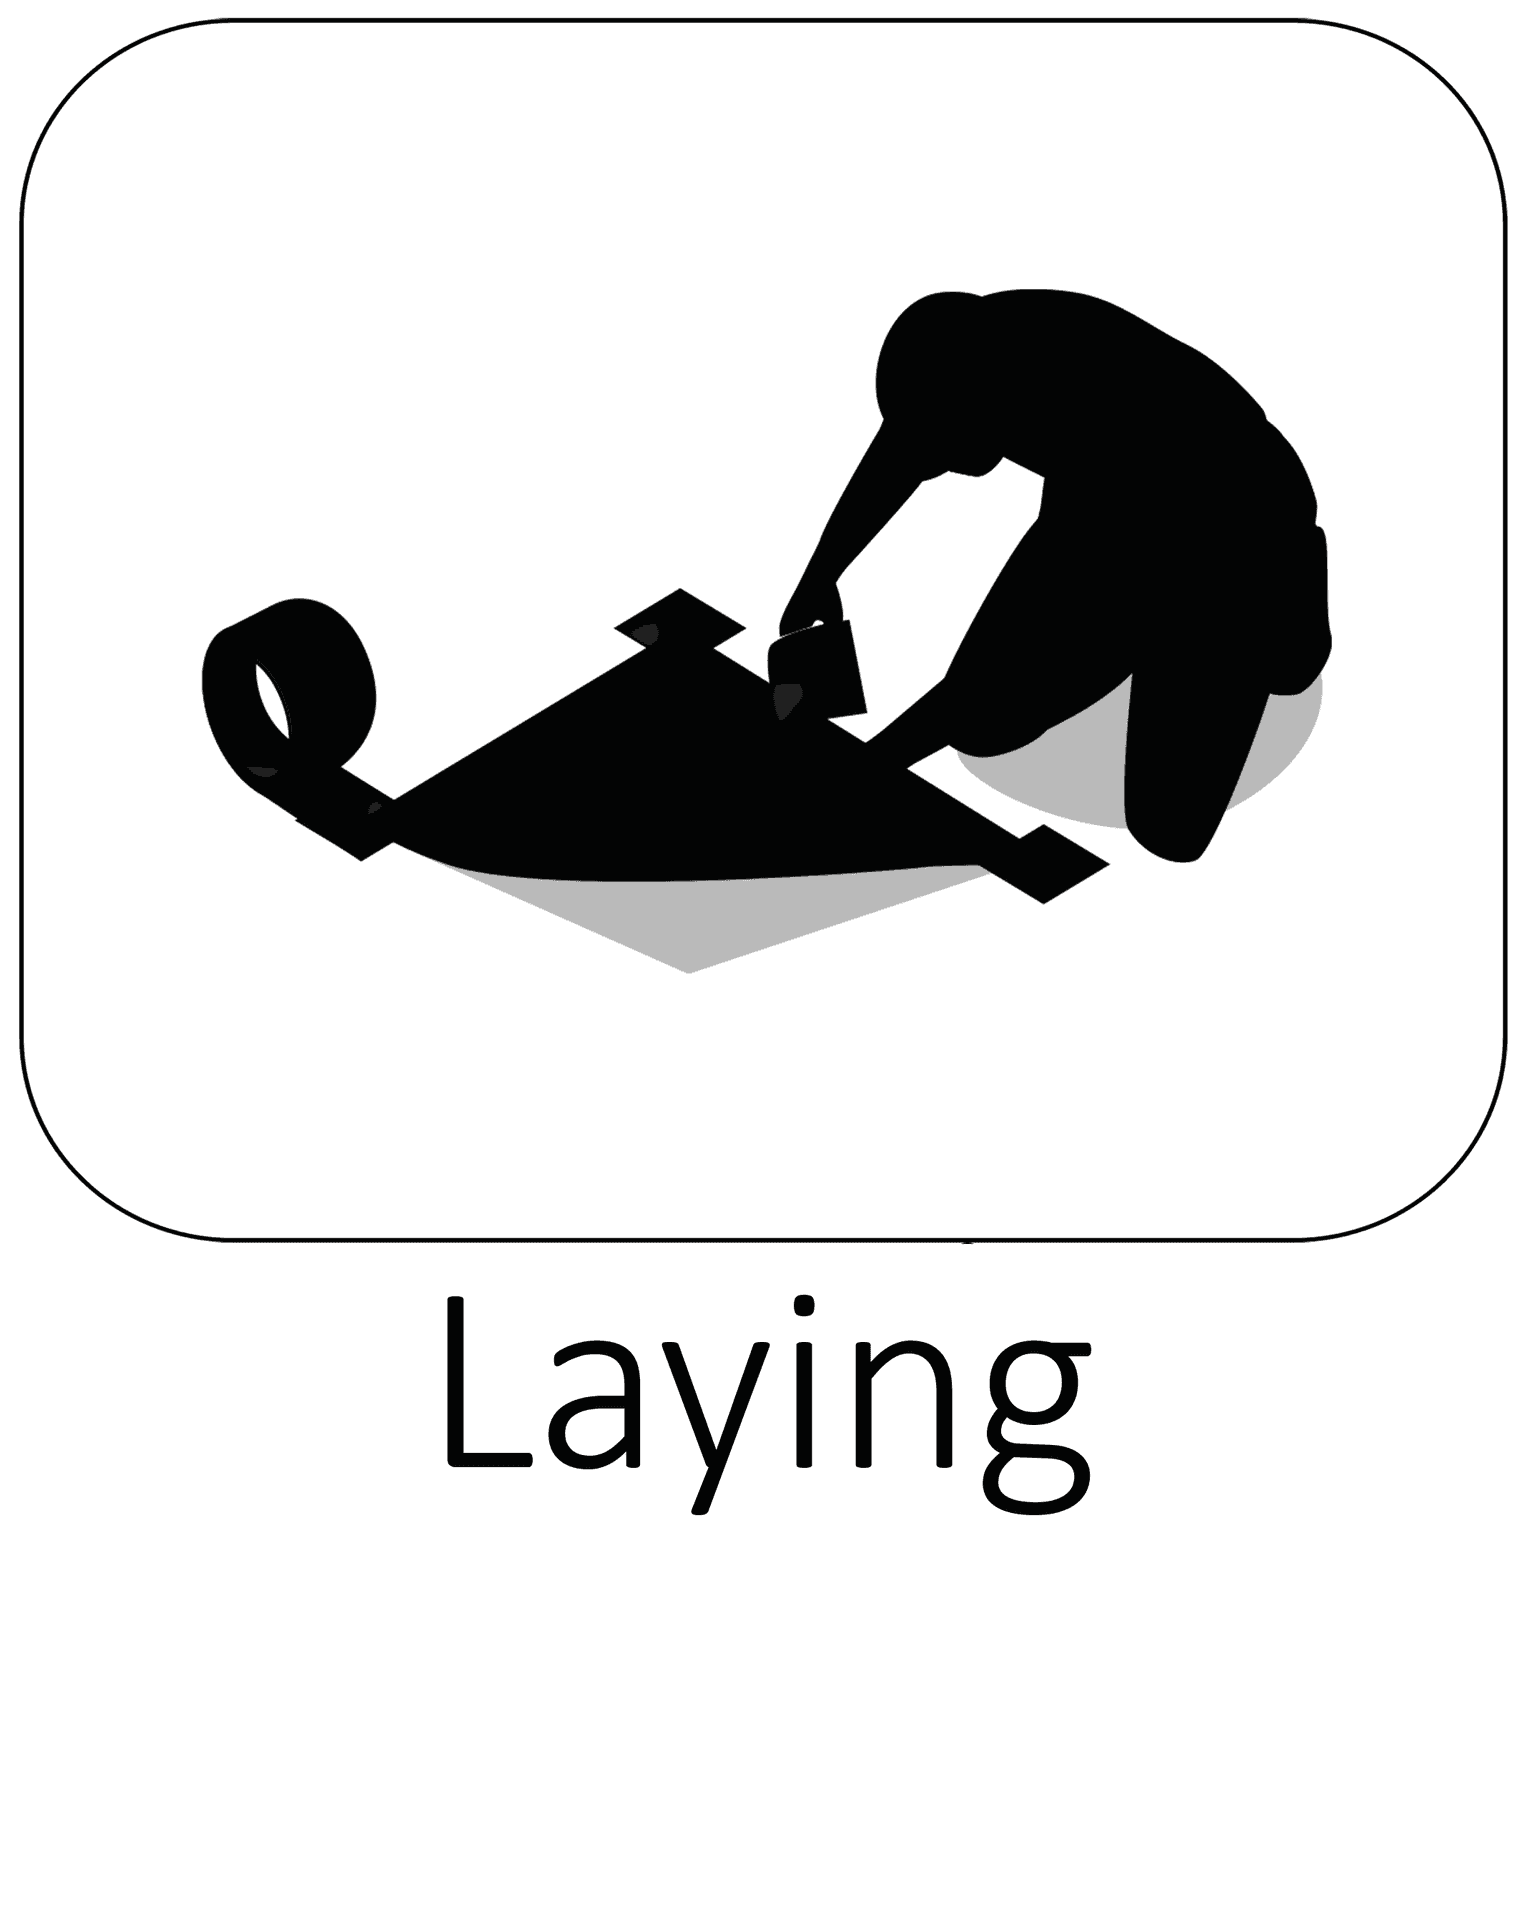 Laying